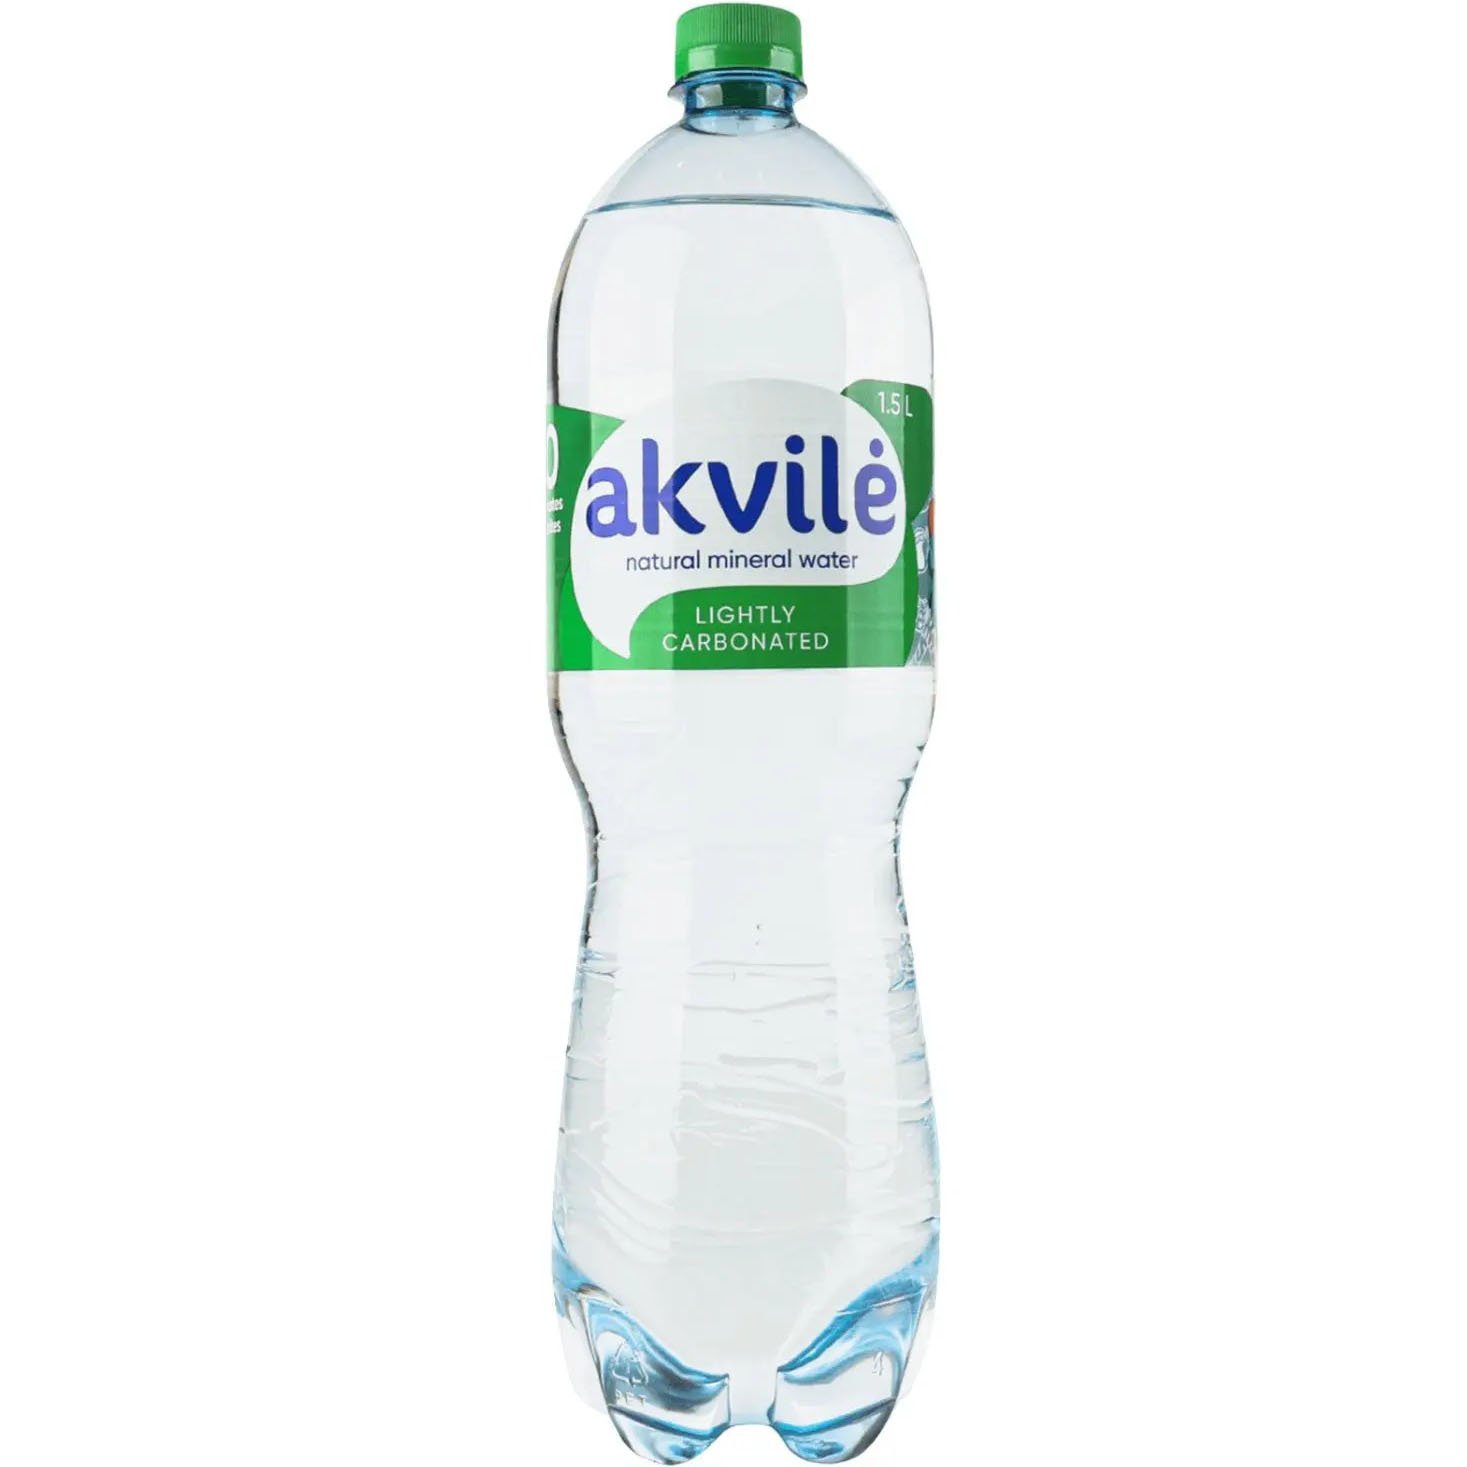 Вода минеральная Akvile слабогазированная 1.5 л - фото 1